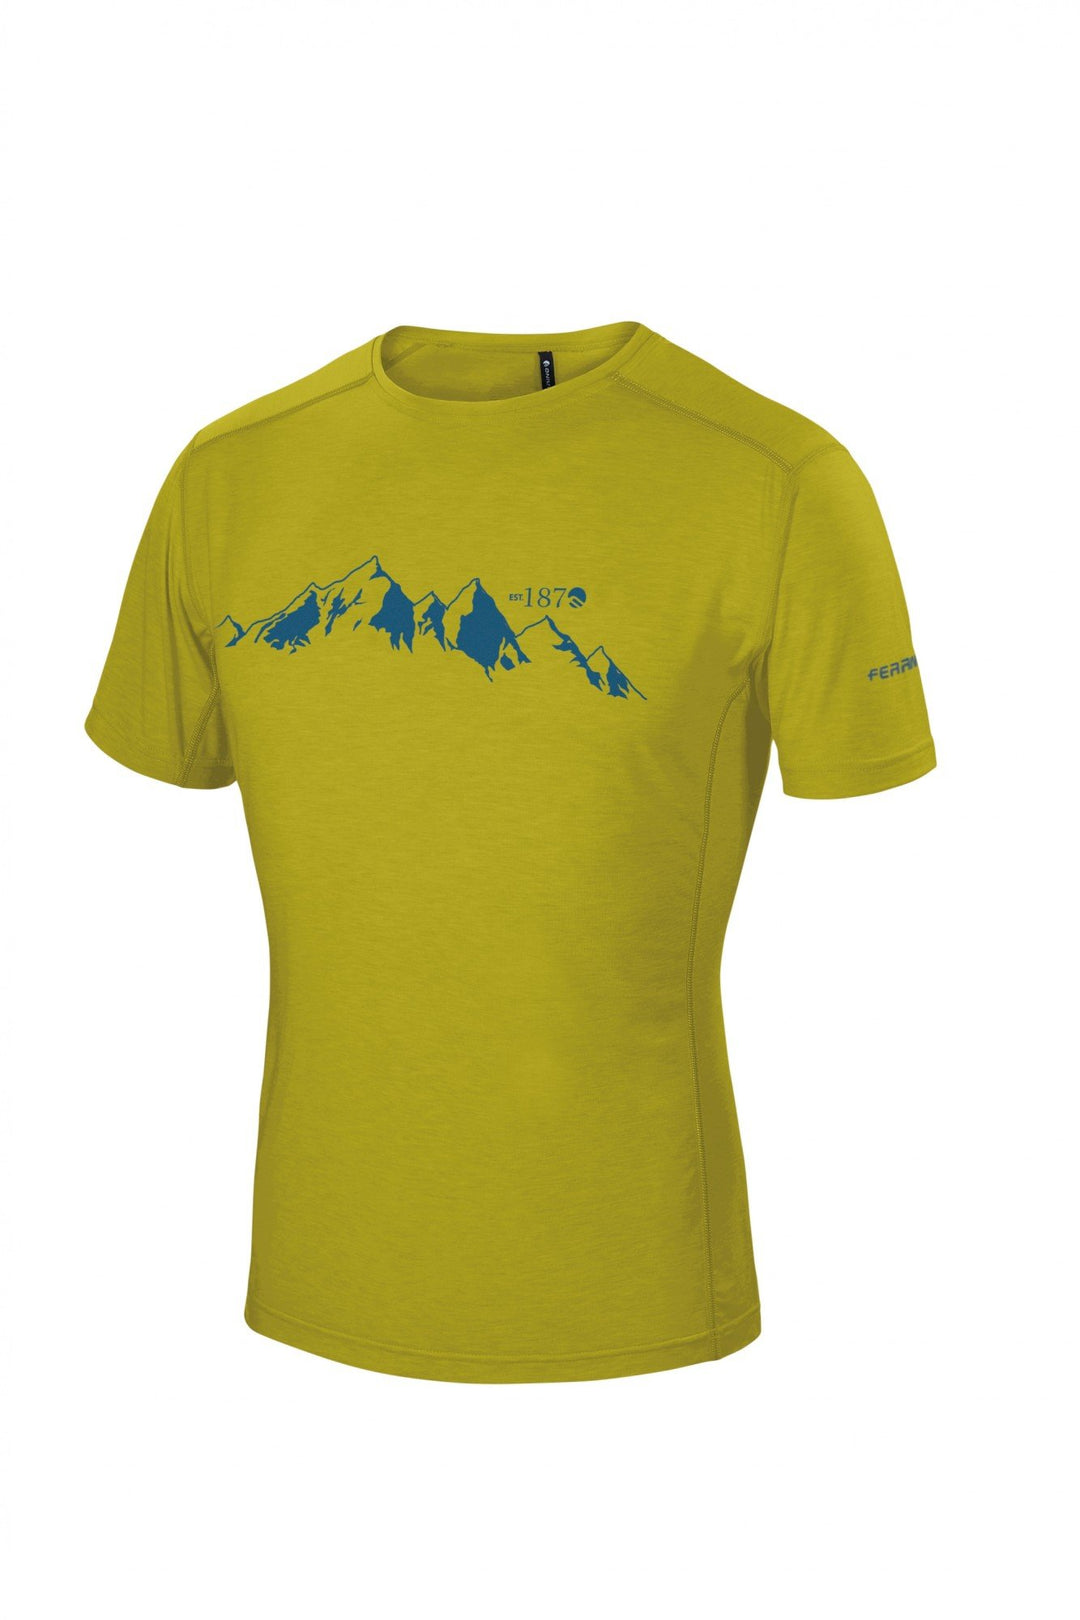 Yoho T-Shirt Man - Citronelle - Blogside